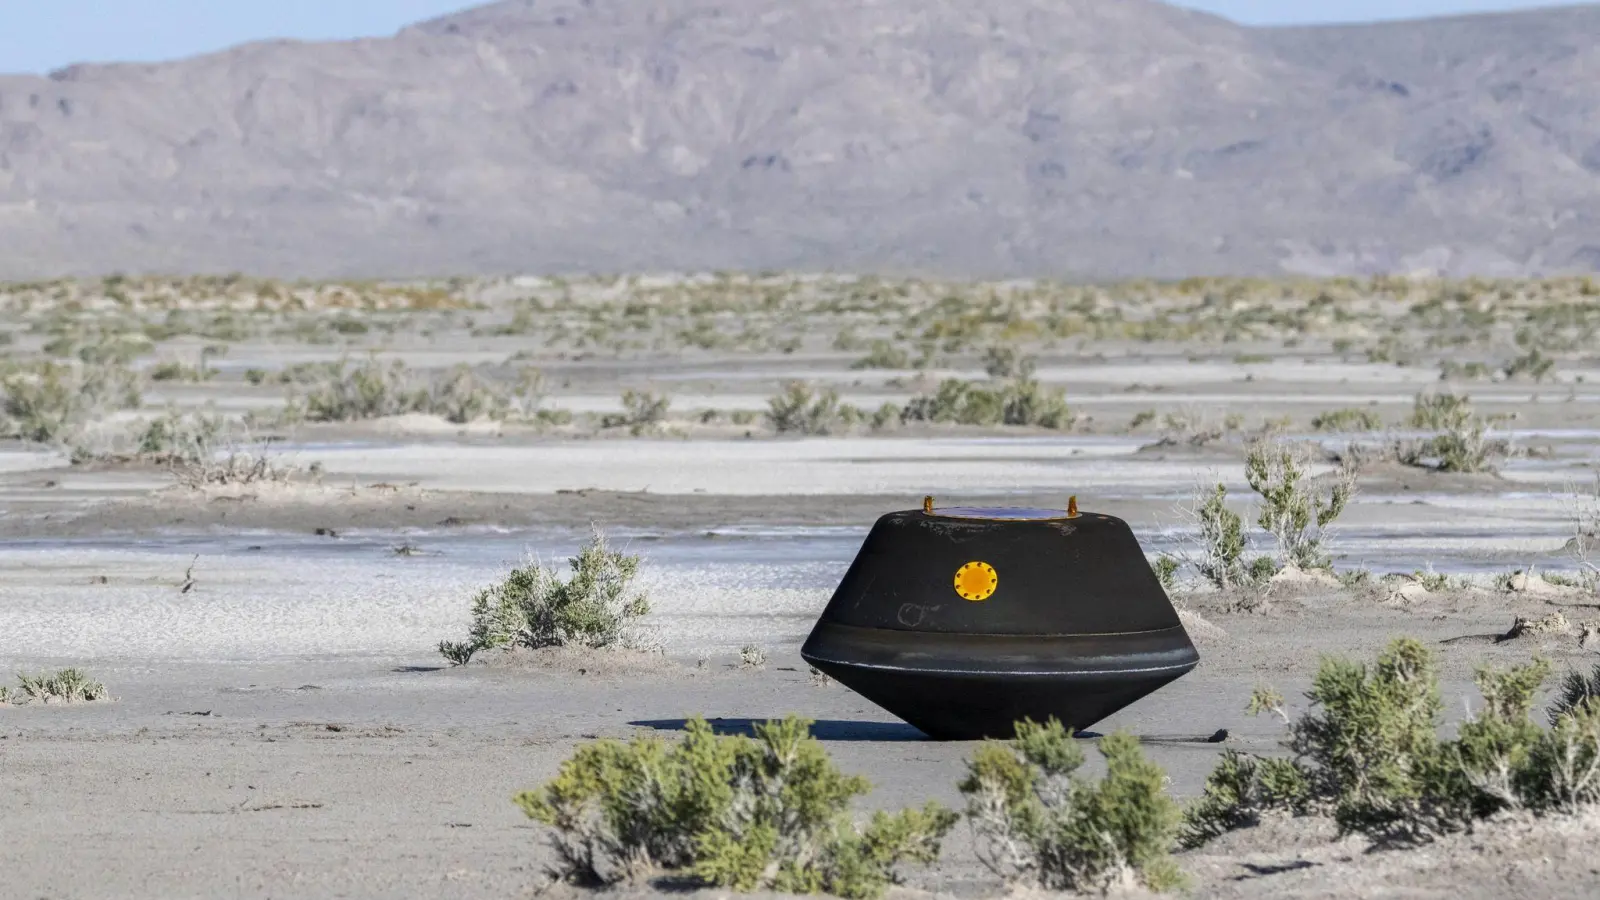 Diese von einer Nasa-Sonde über der Wüste des US-Bundesstaats Utah abgeworfene Kapsel hat rund 250 Gramm Asteroiden-Geröll im Gepäck. Fachleute können sie möglicherweise schon ab morgen untersuchen. (Foto: Keegan Barber/Nasa/Zuma Press/dpa)